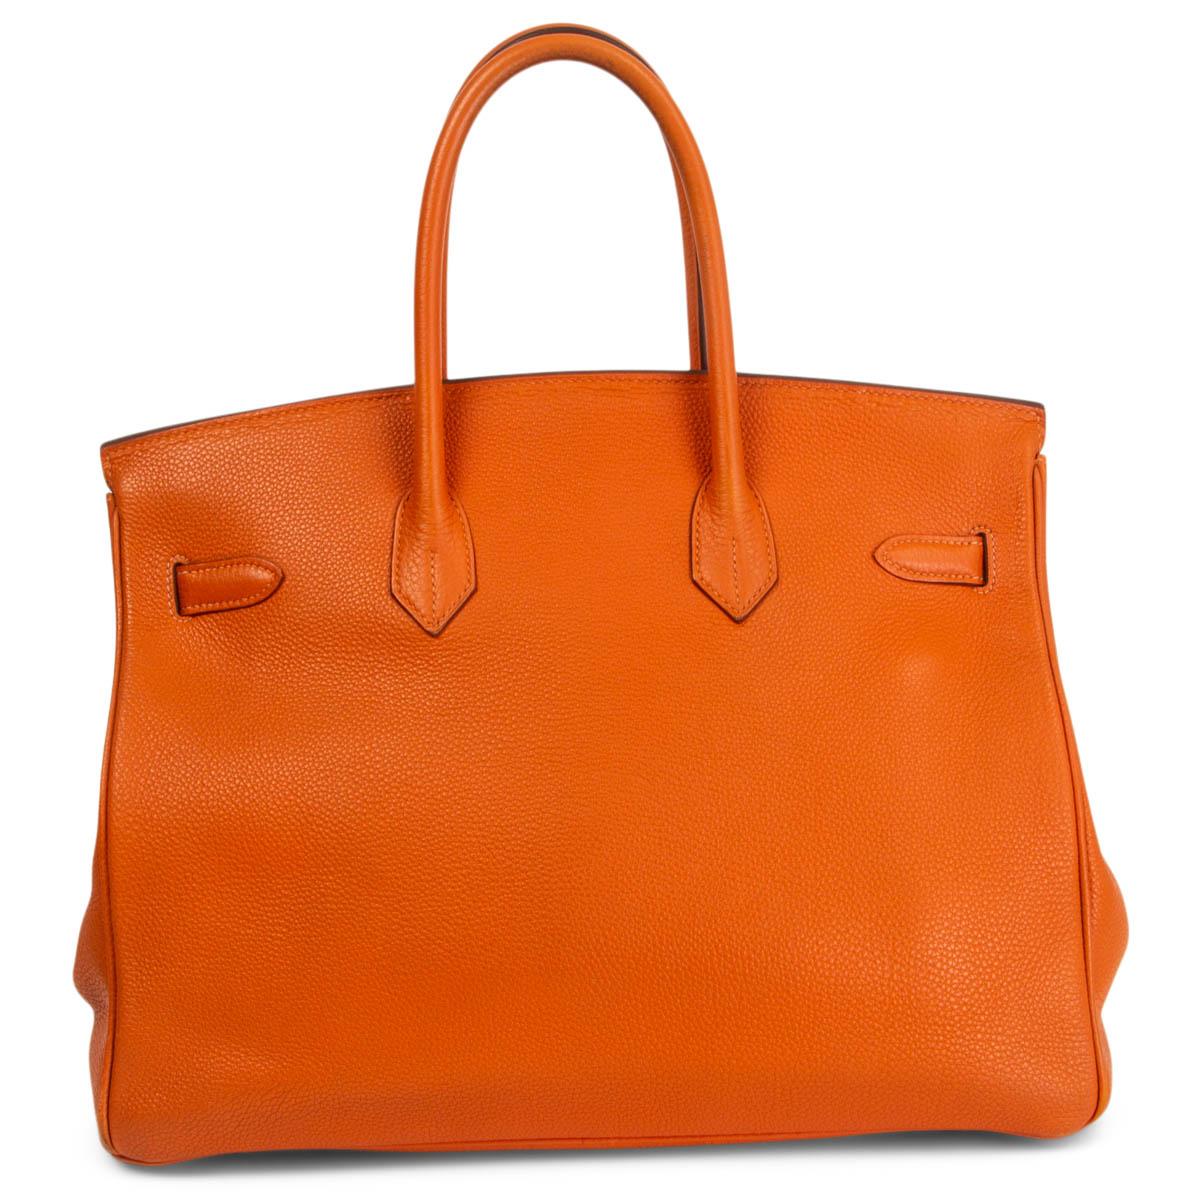 hermes orange bag price